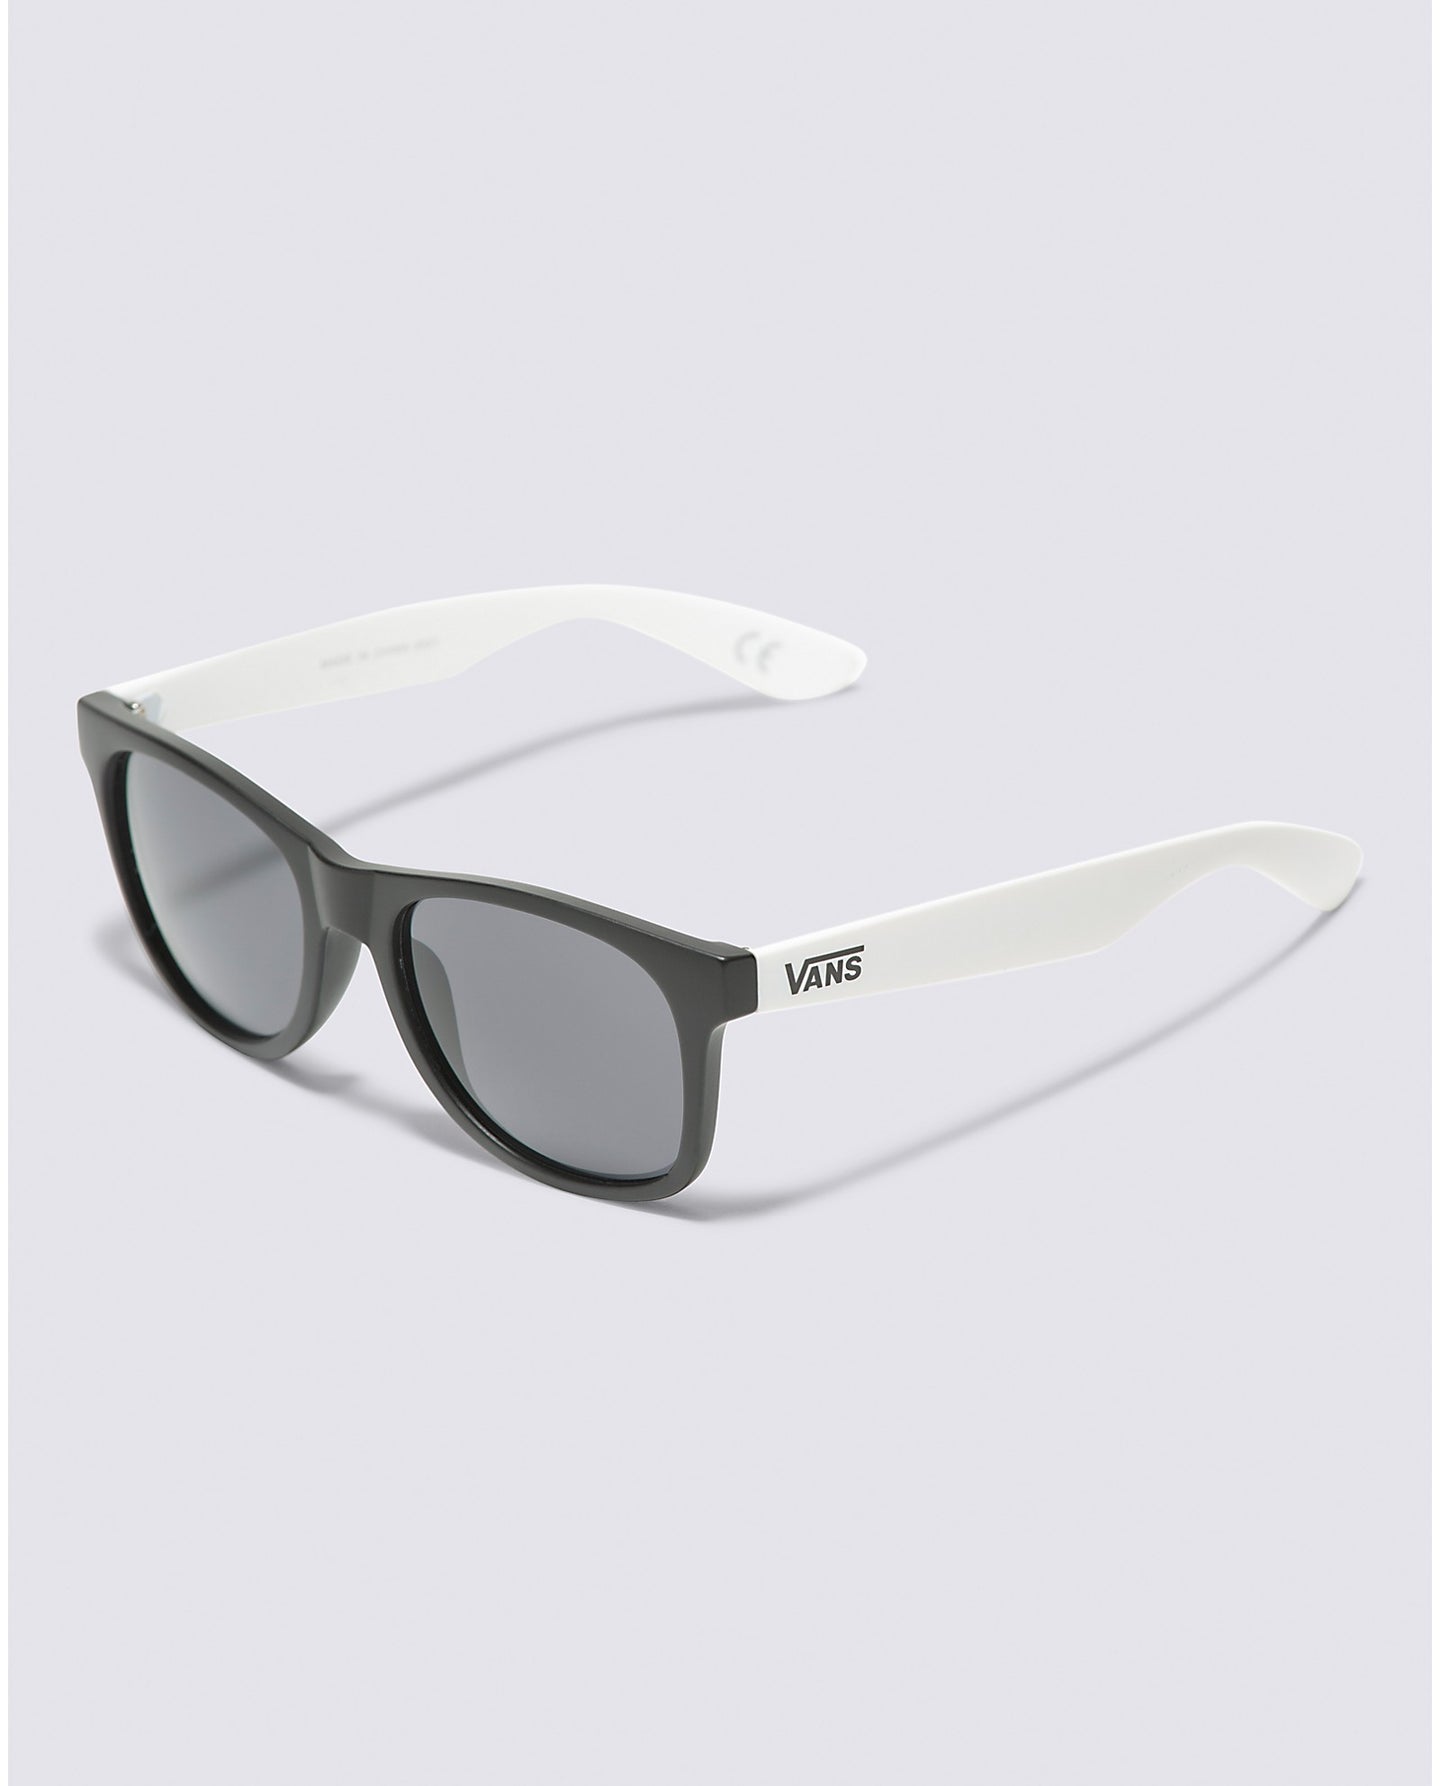 Vans - Spicoli Sunglasses